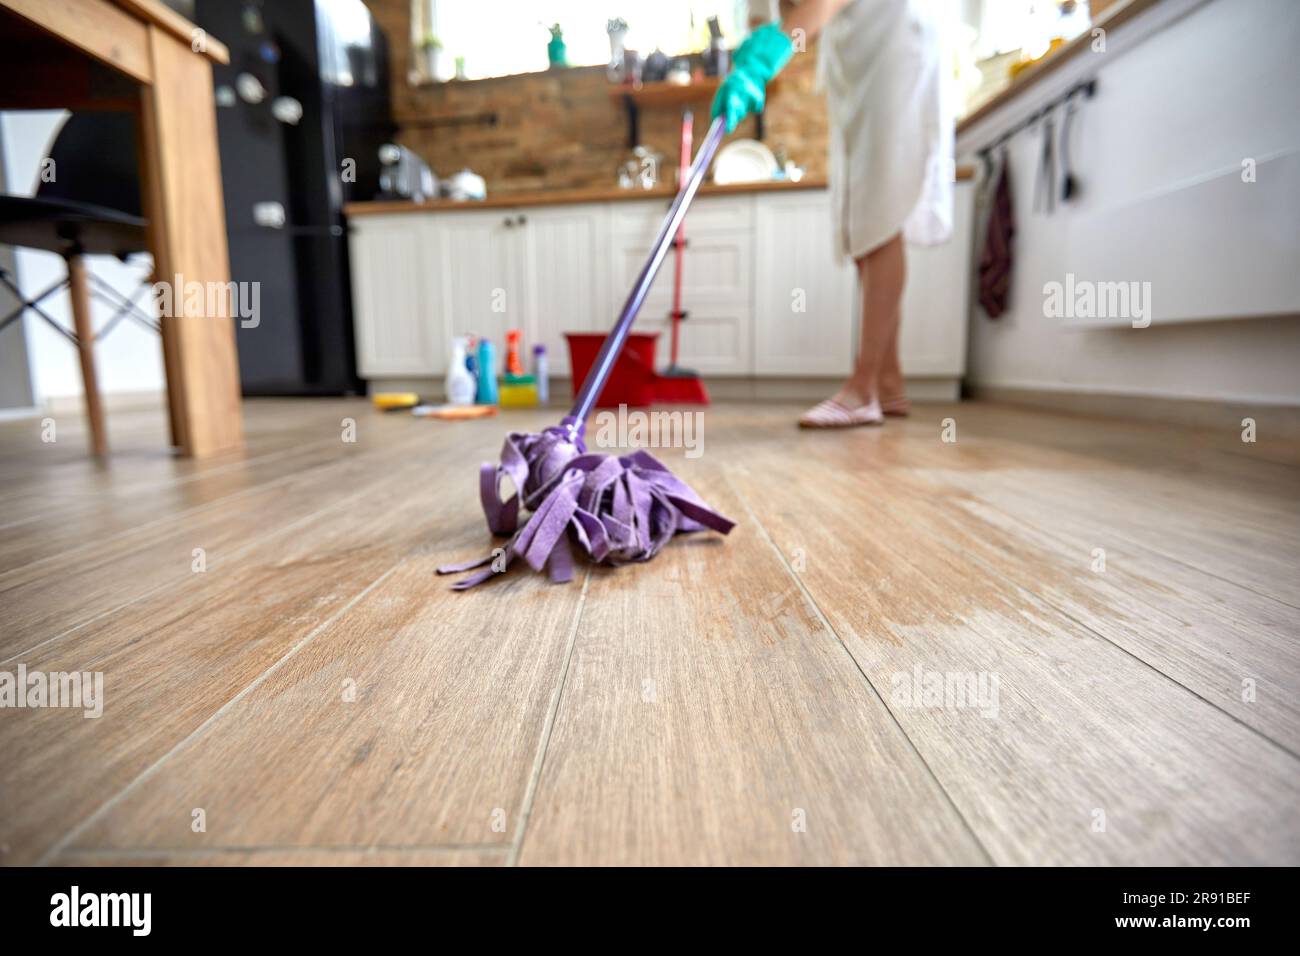 Die Frau kümmert sich um die Reinigung ihres Küchenbodens. Mit fachkundiger Präzision schwingt sie einen Mopp mit Finesse und gleitet ihn mühelos über die Oberfläche Stockfoto